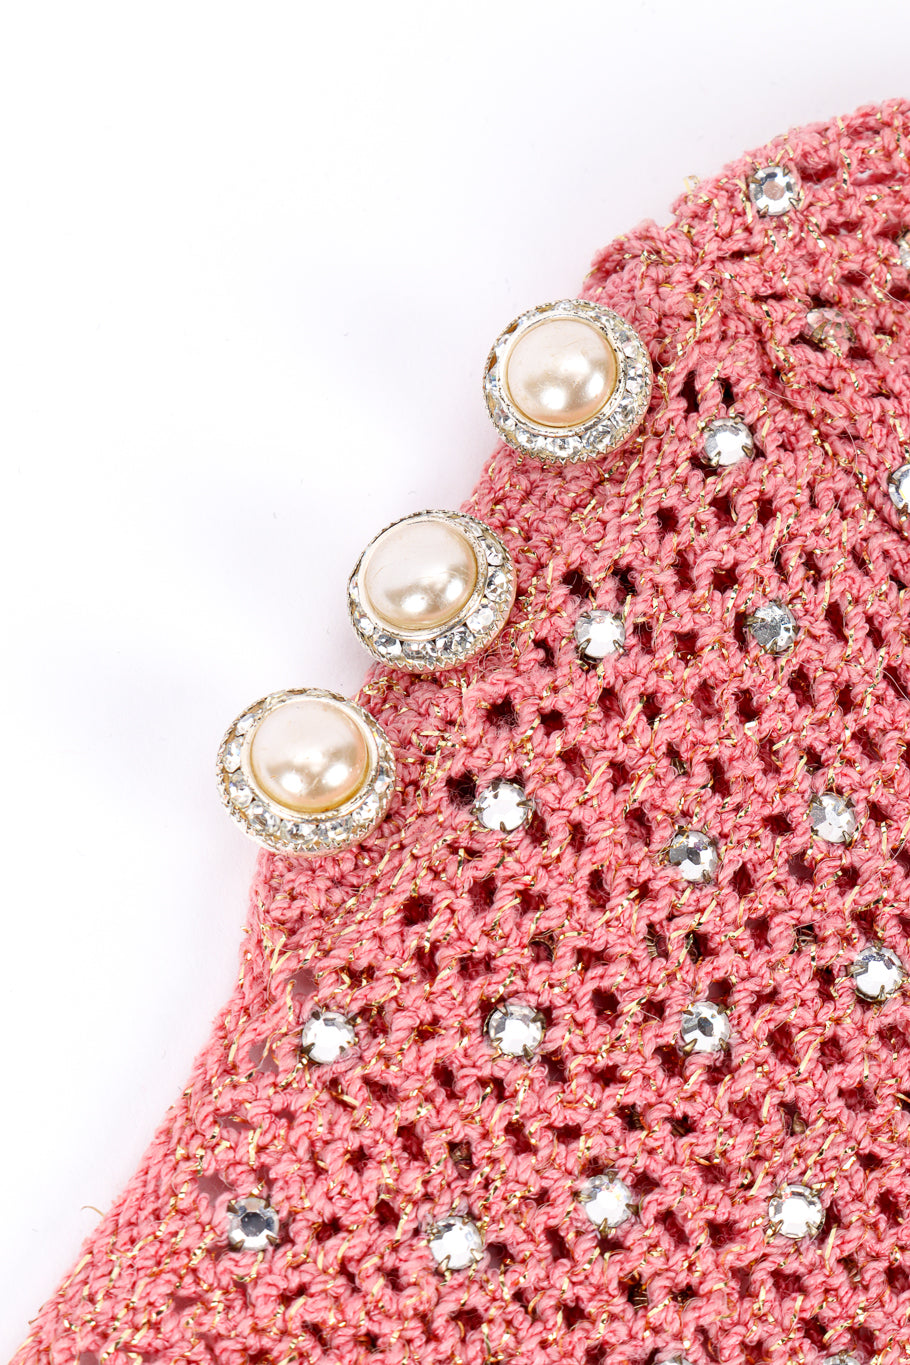 Vintage Adolfo Crystal Open Knit Top II button closeup @recessla